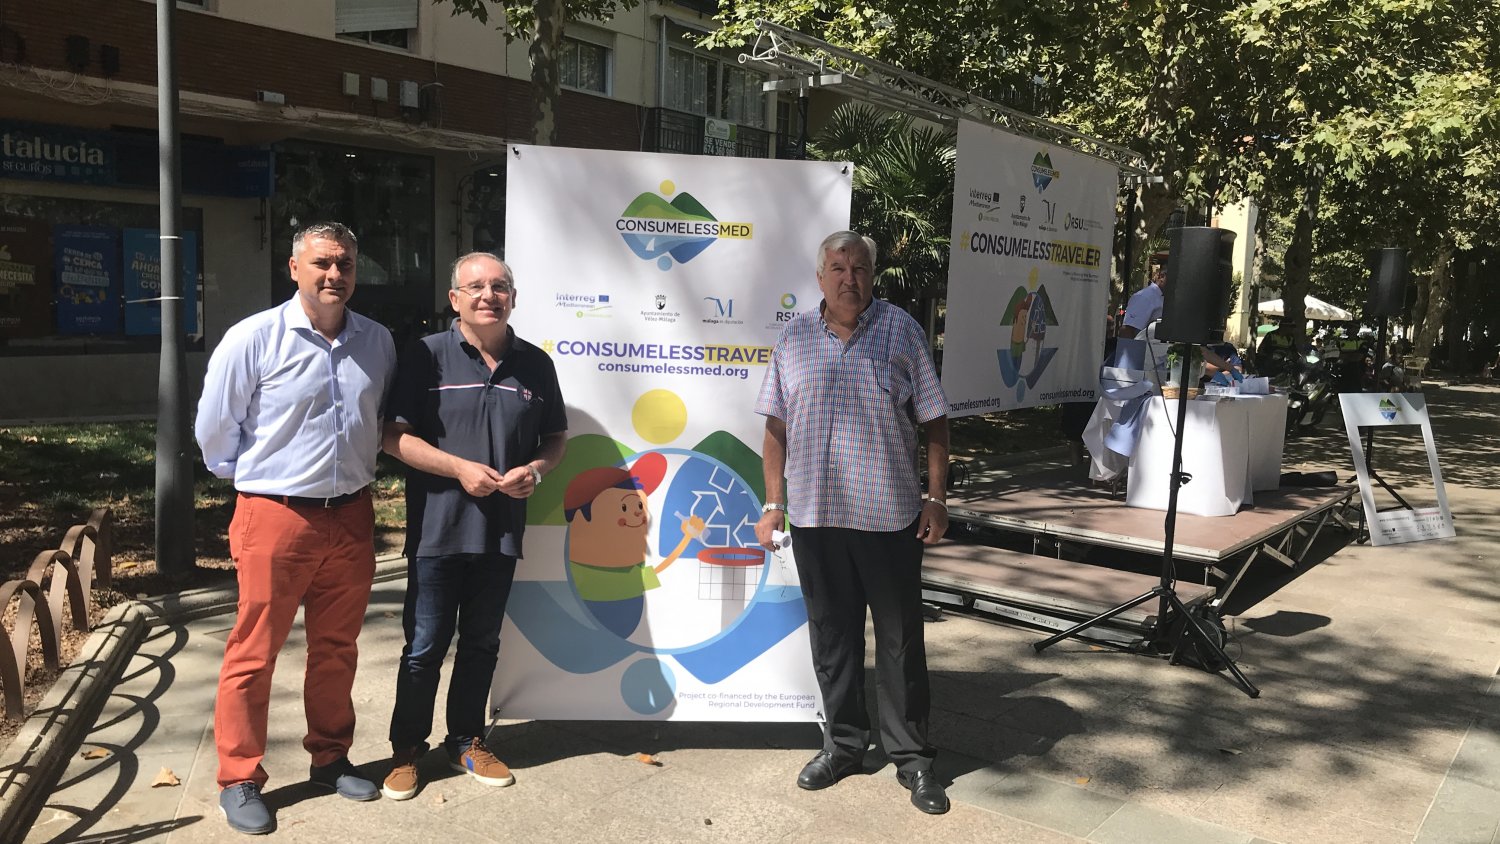 Vélez-Málaga apuesta por el turismo sostenible con el proyecto europeo Consumeless